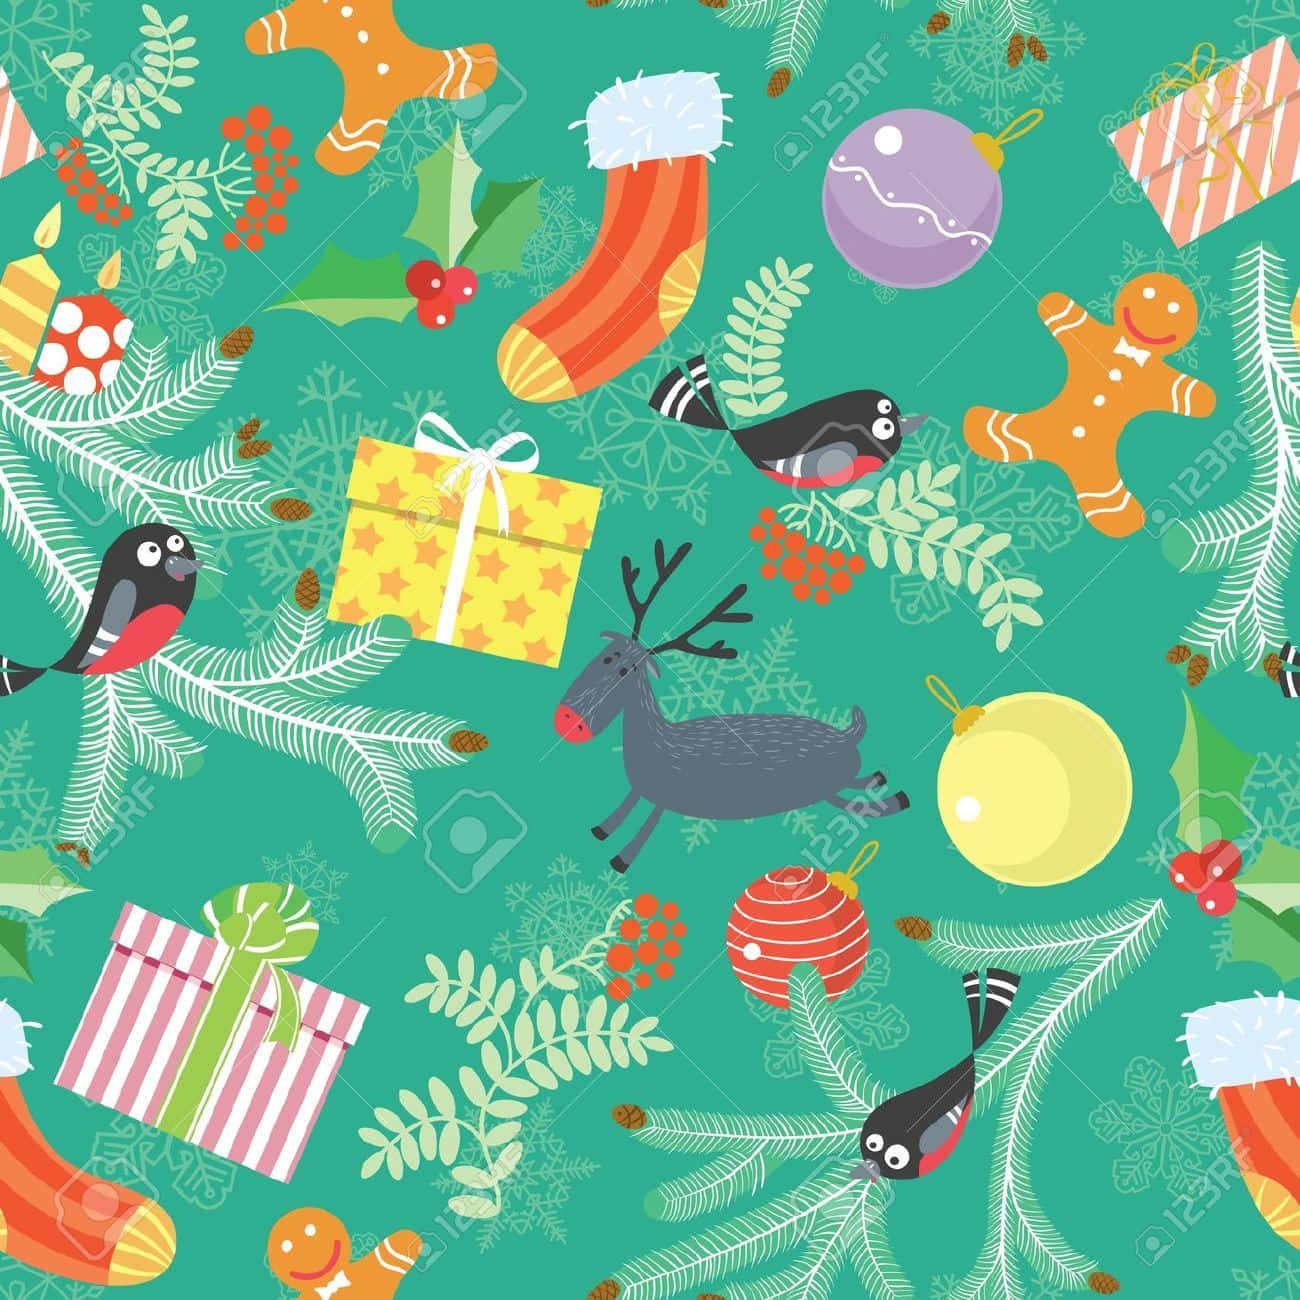 Beautiful and festive Christmas pattern. Wallpaper